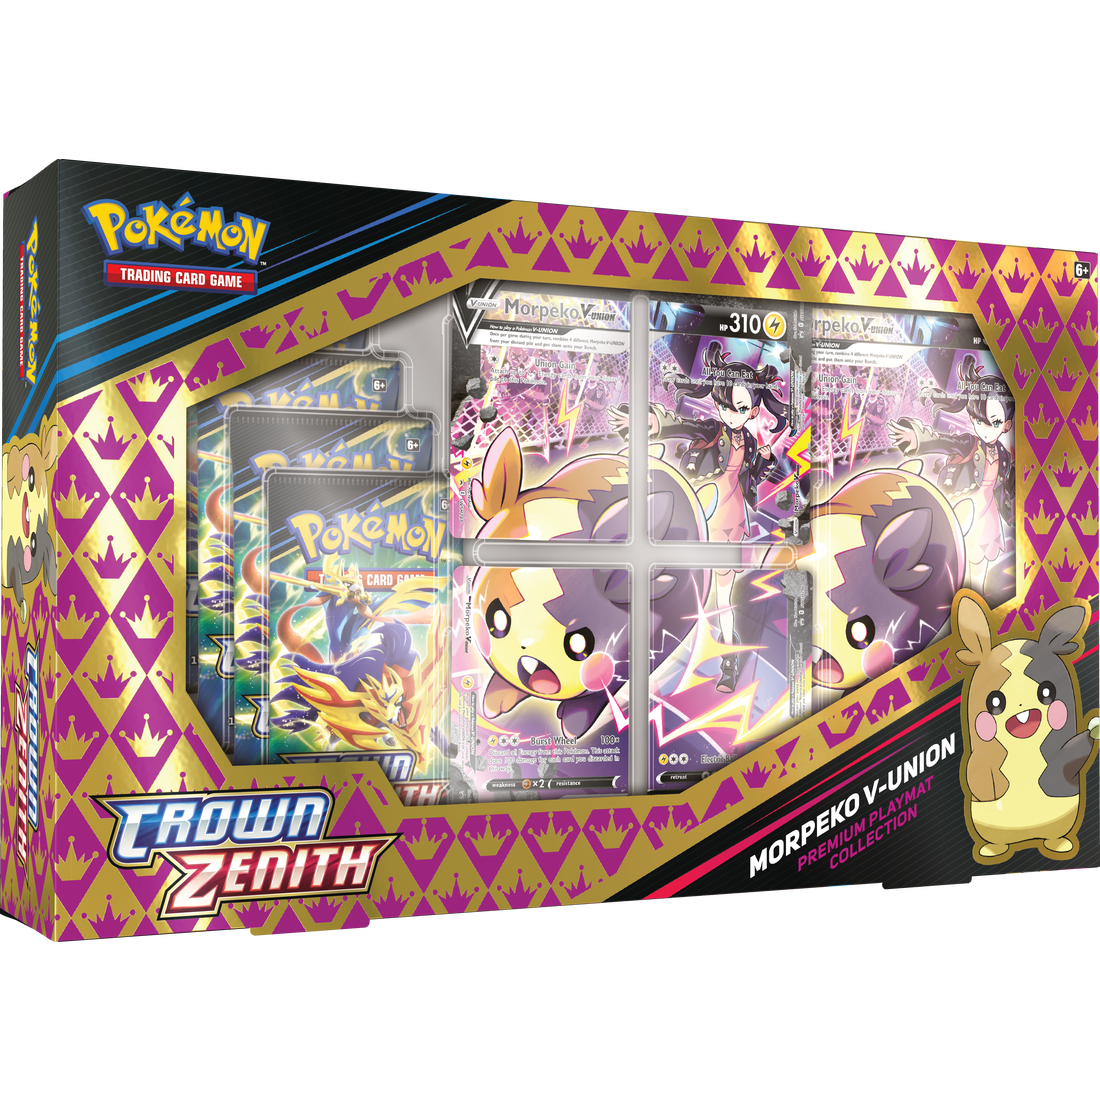 Pokémon - Collection de tapis de jeu Premium Crown Zenith Morpeko V-Union